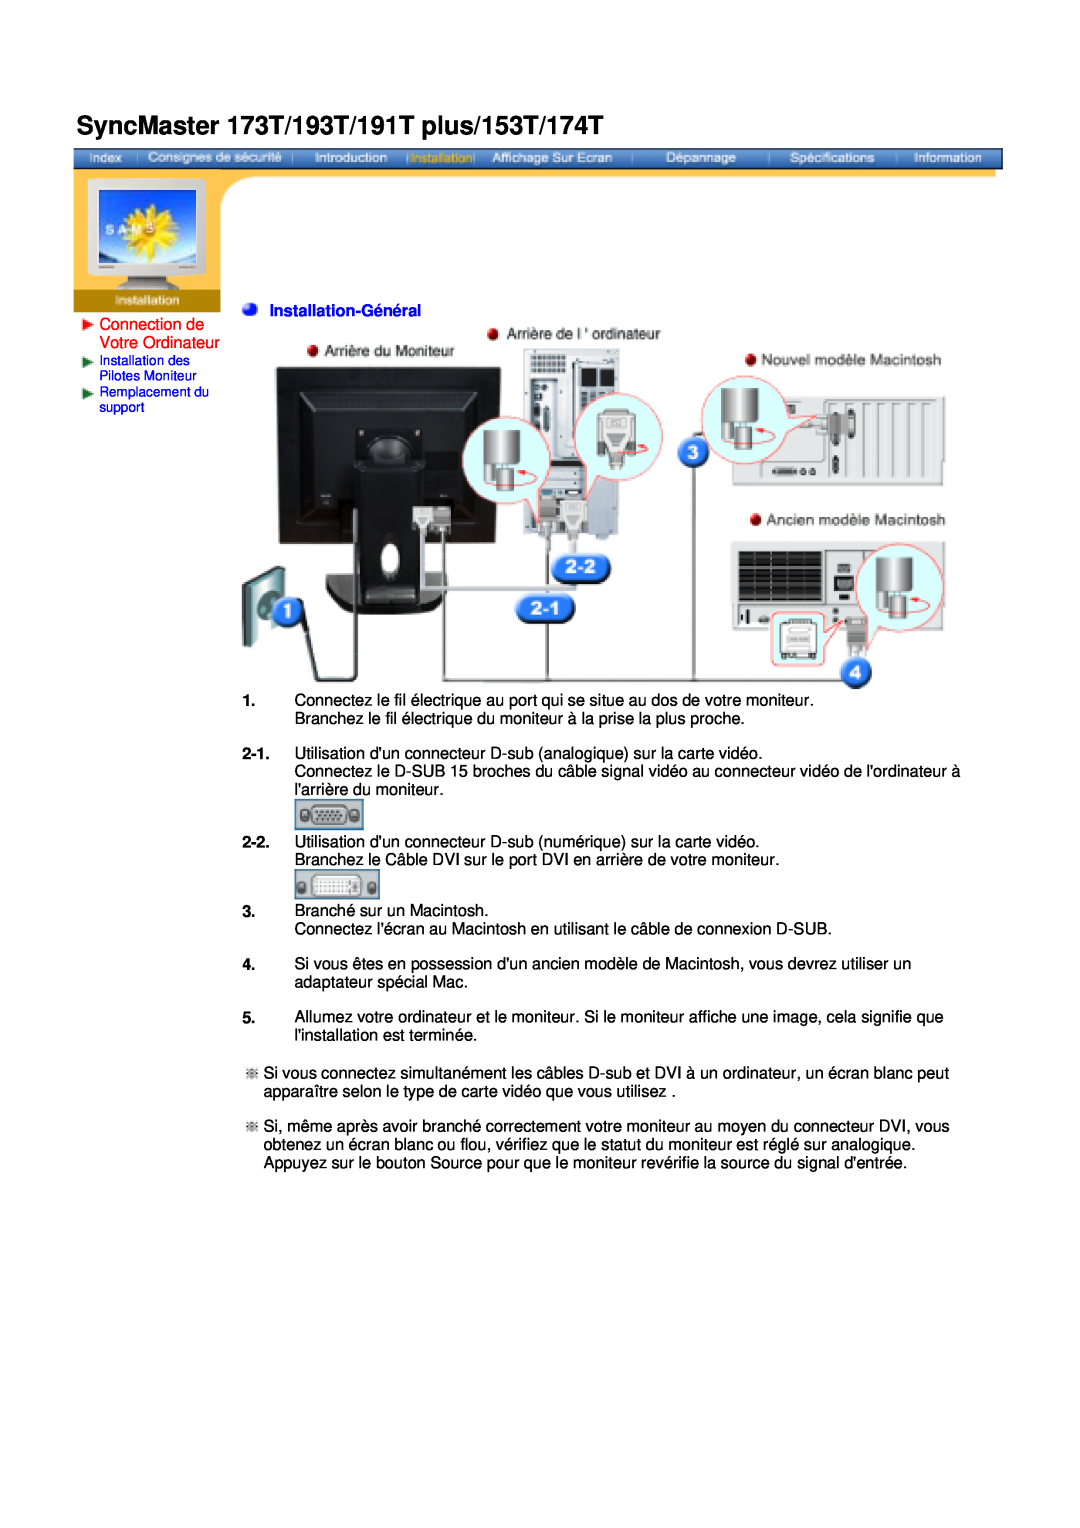 Samsung NB19BSHSQ/EDC manual Connection de Votre Ordinateur, Installation-Général, SyncMaster 173T/193T/191T plus/153T/174T 